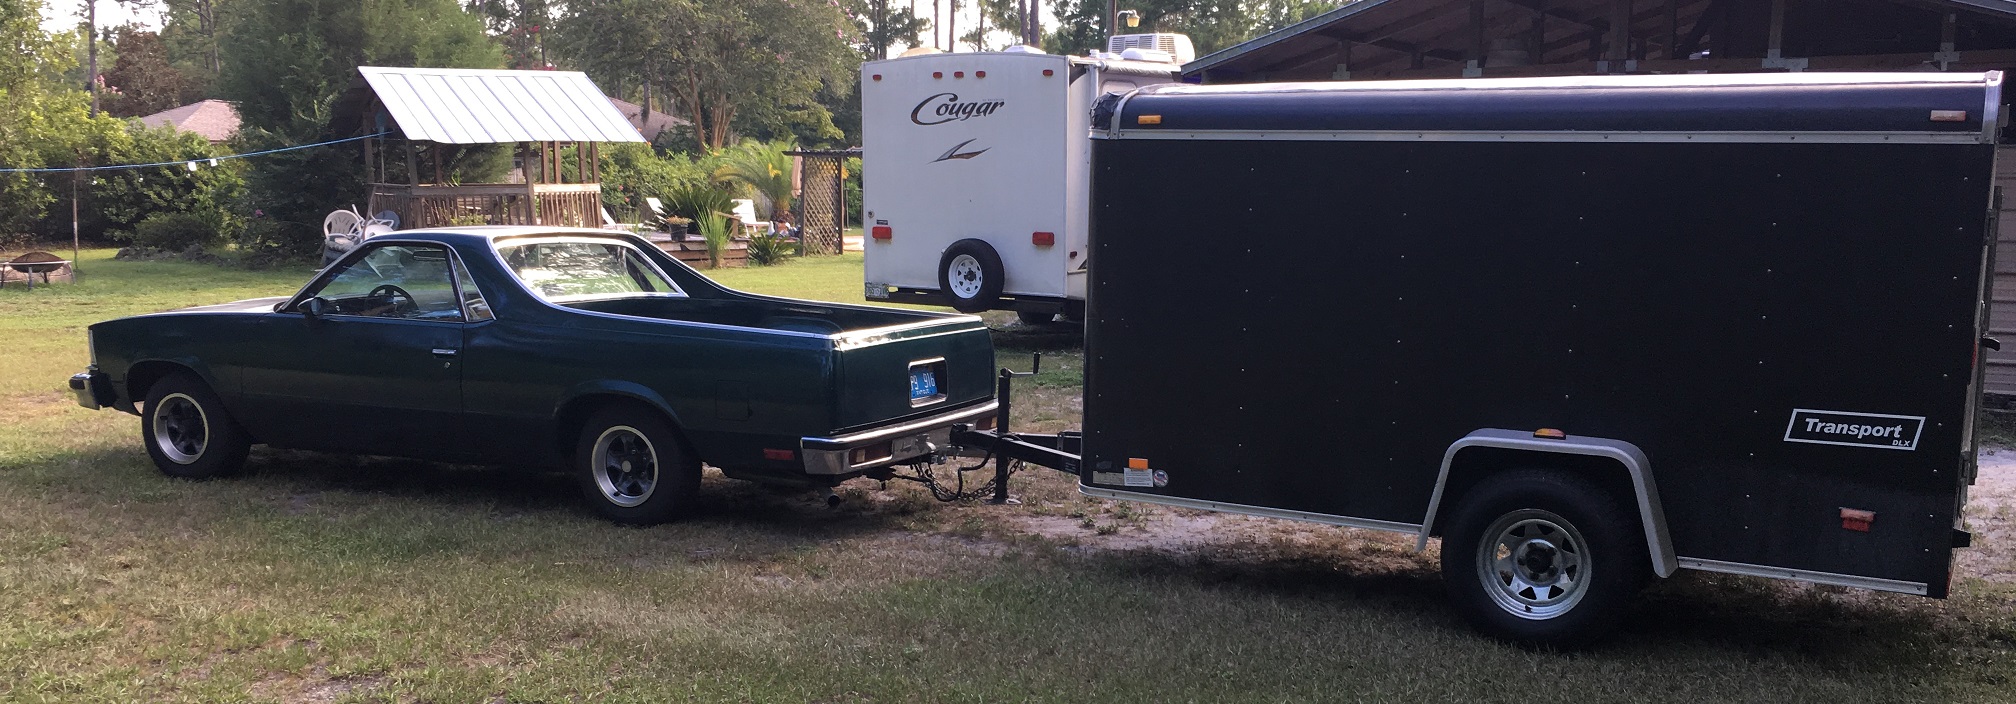 1978 Chevrolet El Camino towing trailer